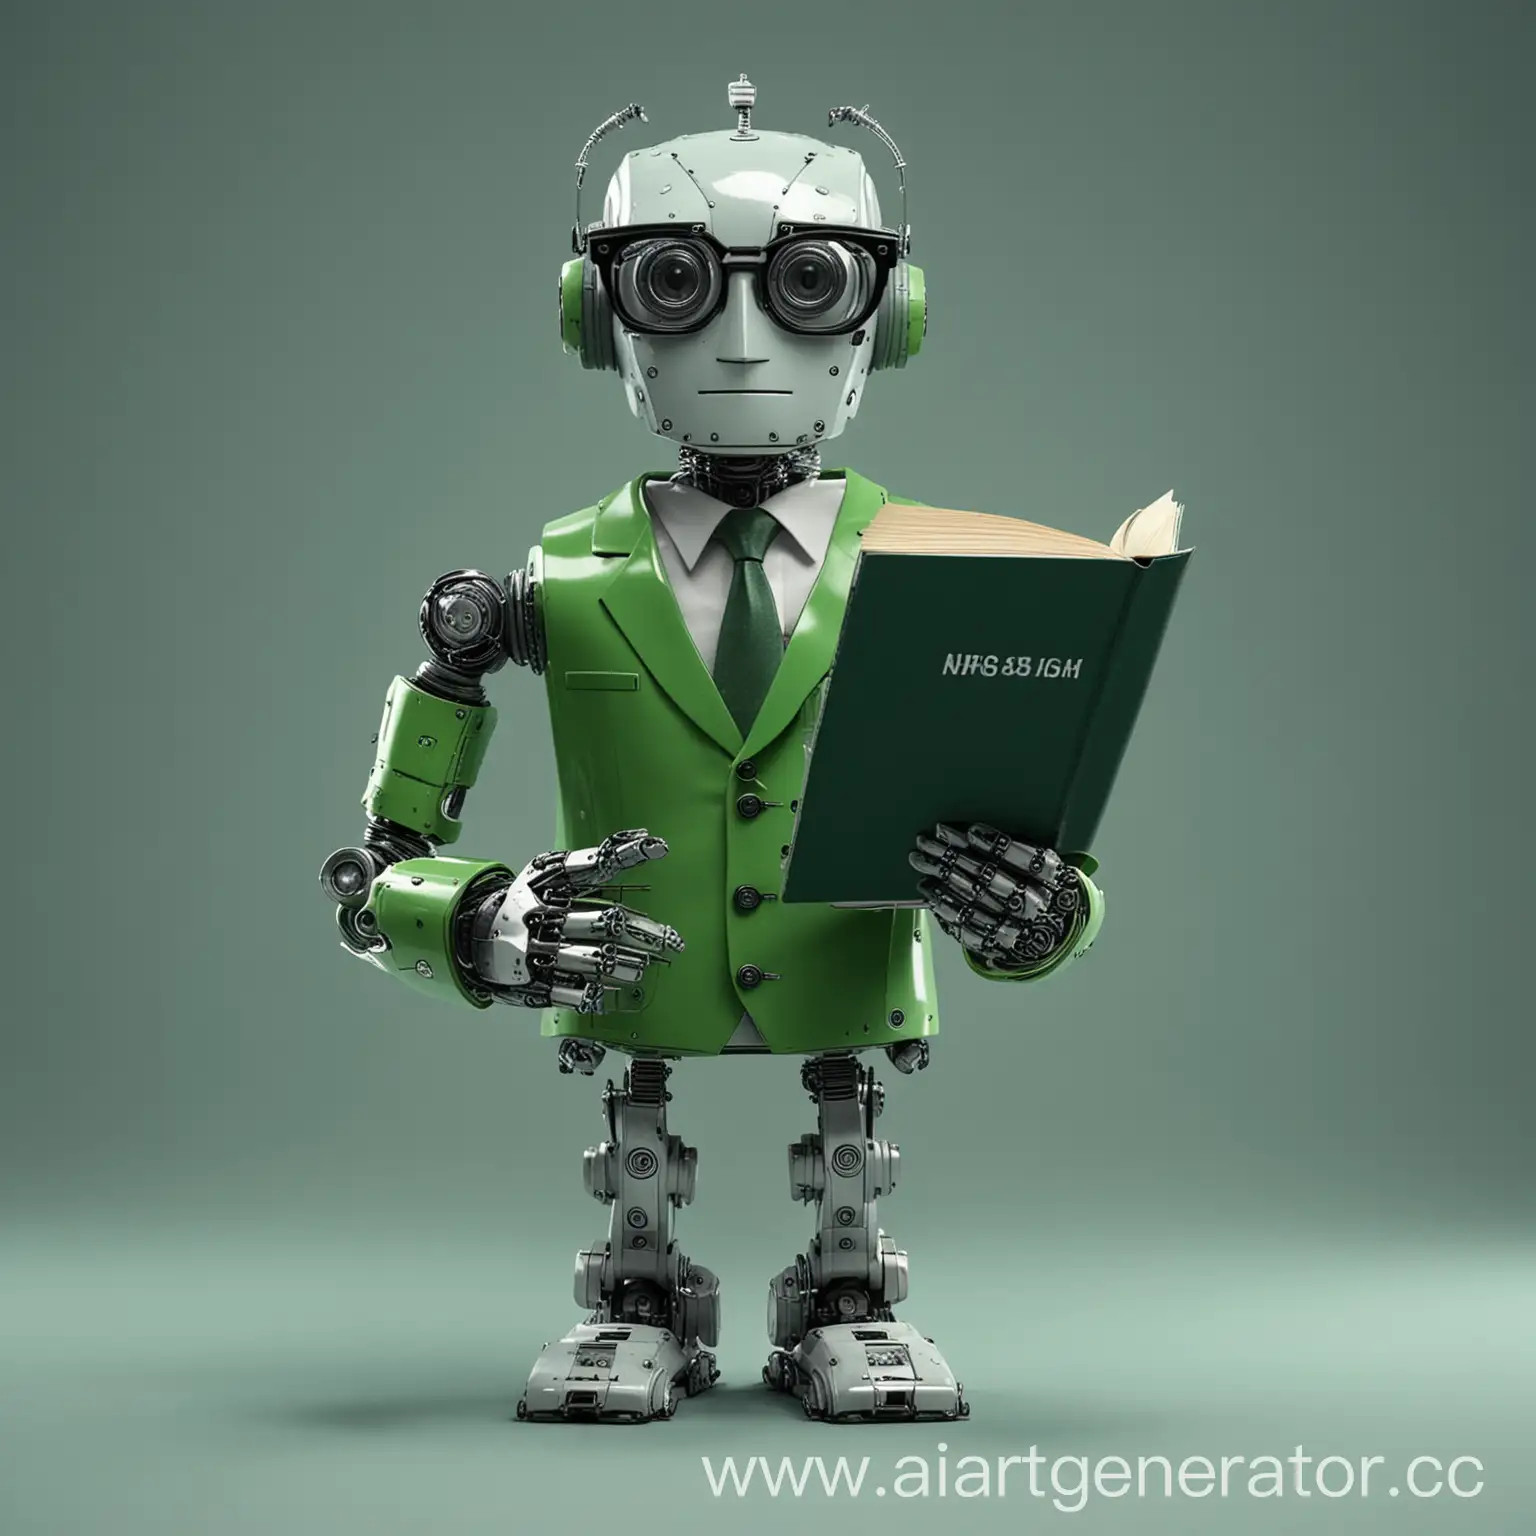 робот в очках, с учебником в руках, часами на левой руке, в строгом зелёном костюме